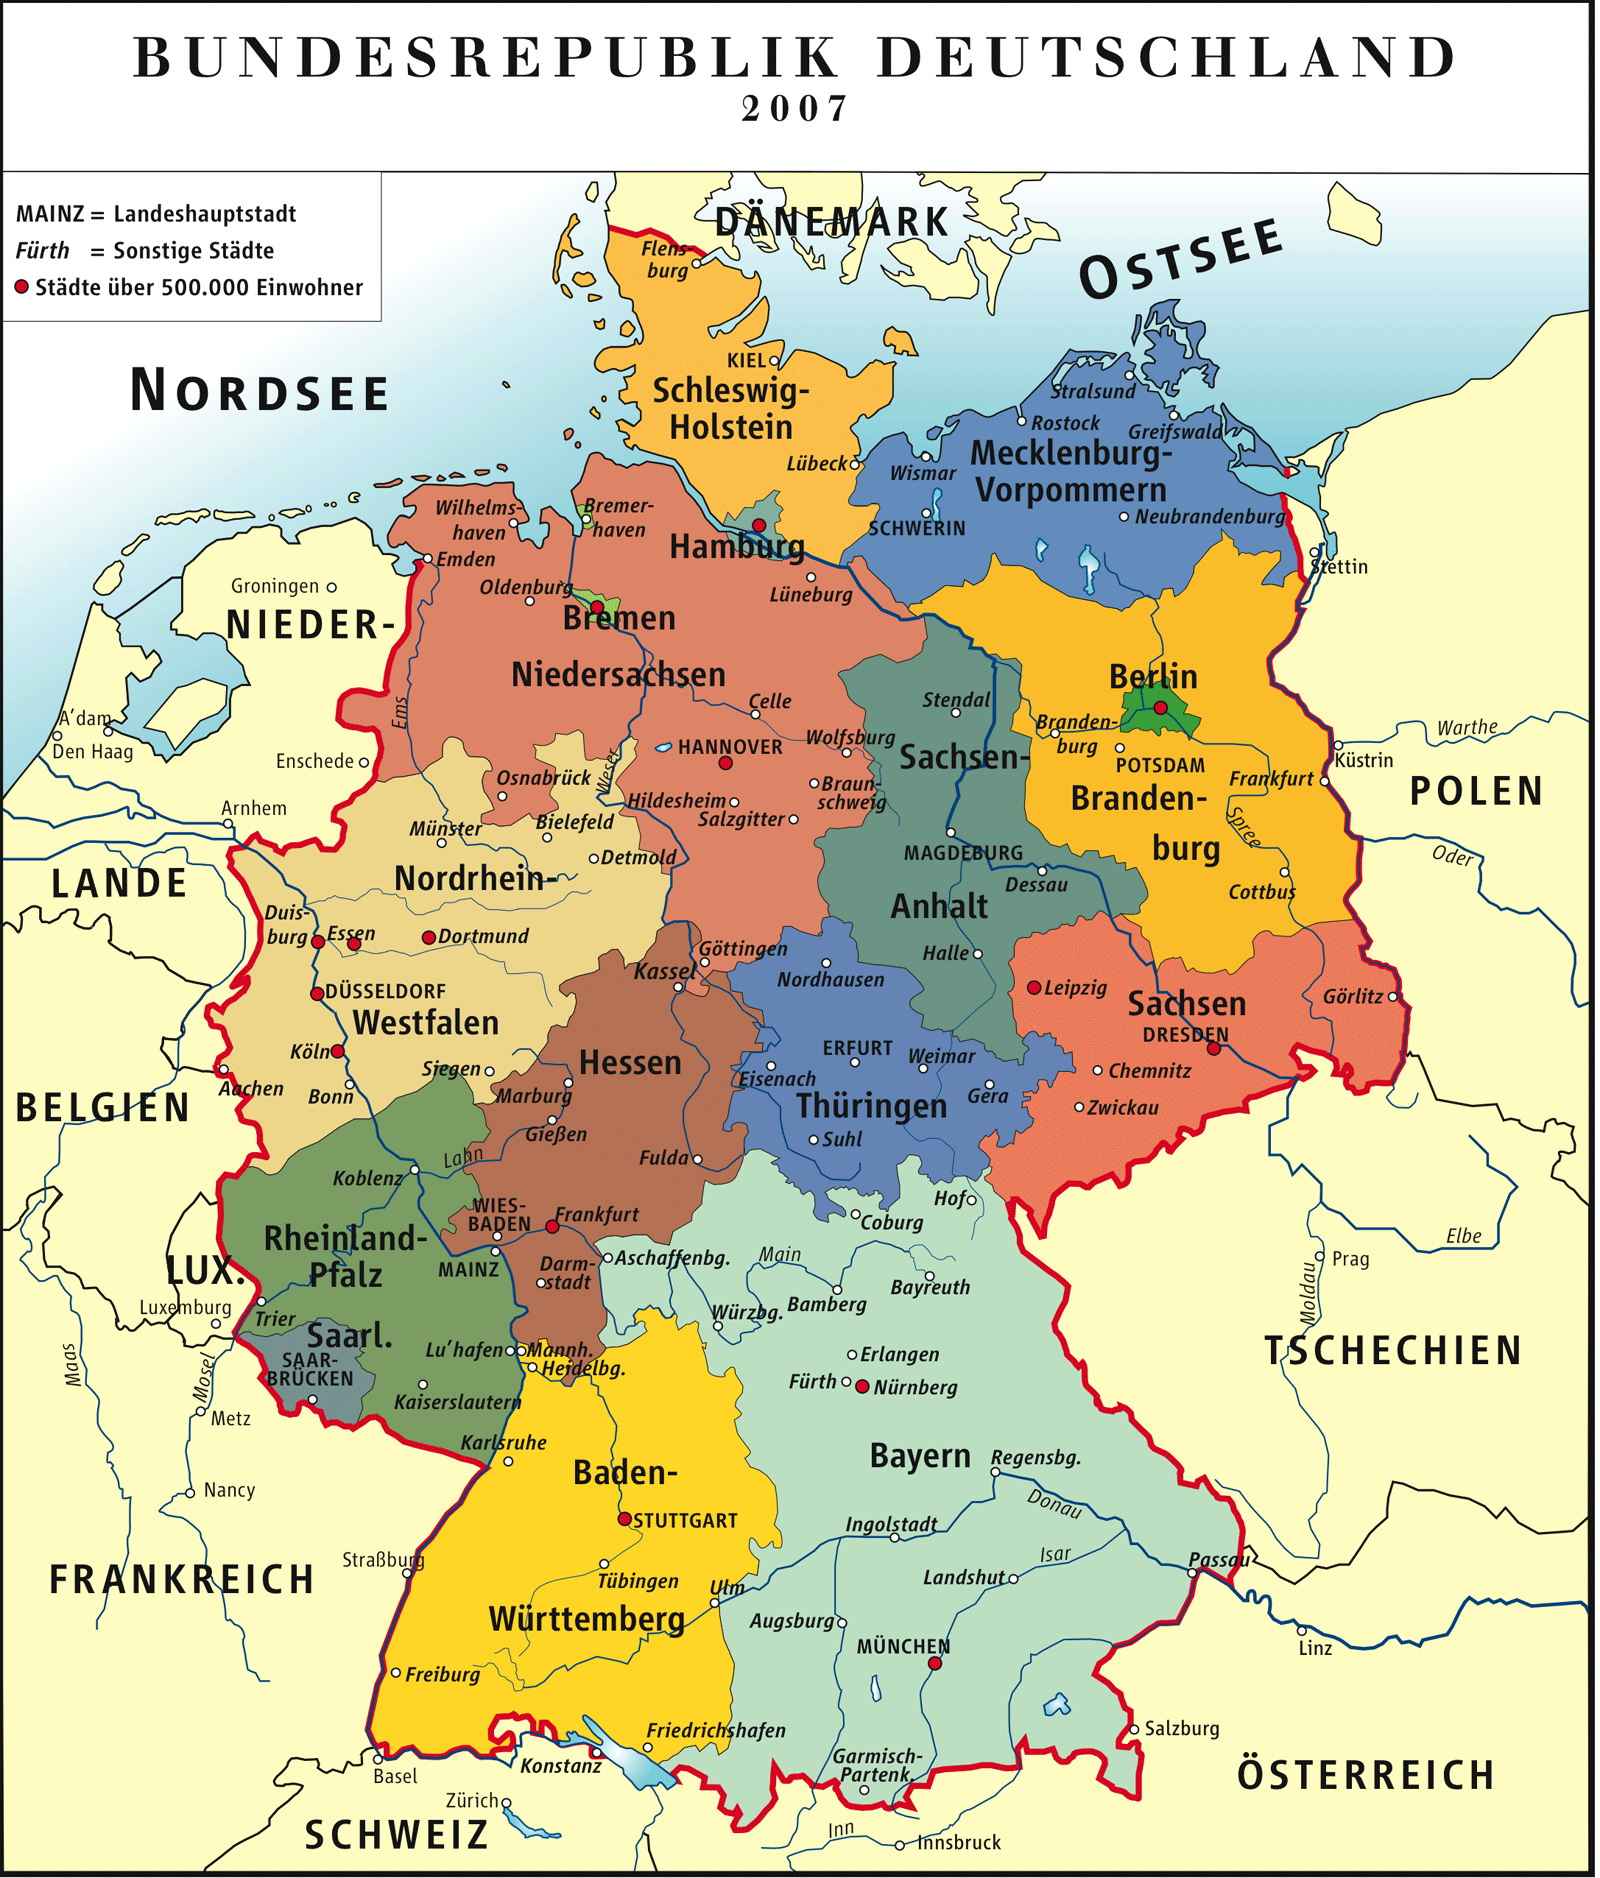 Федеративная республика Германия - политическая карта на немецком языке